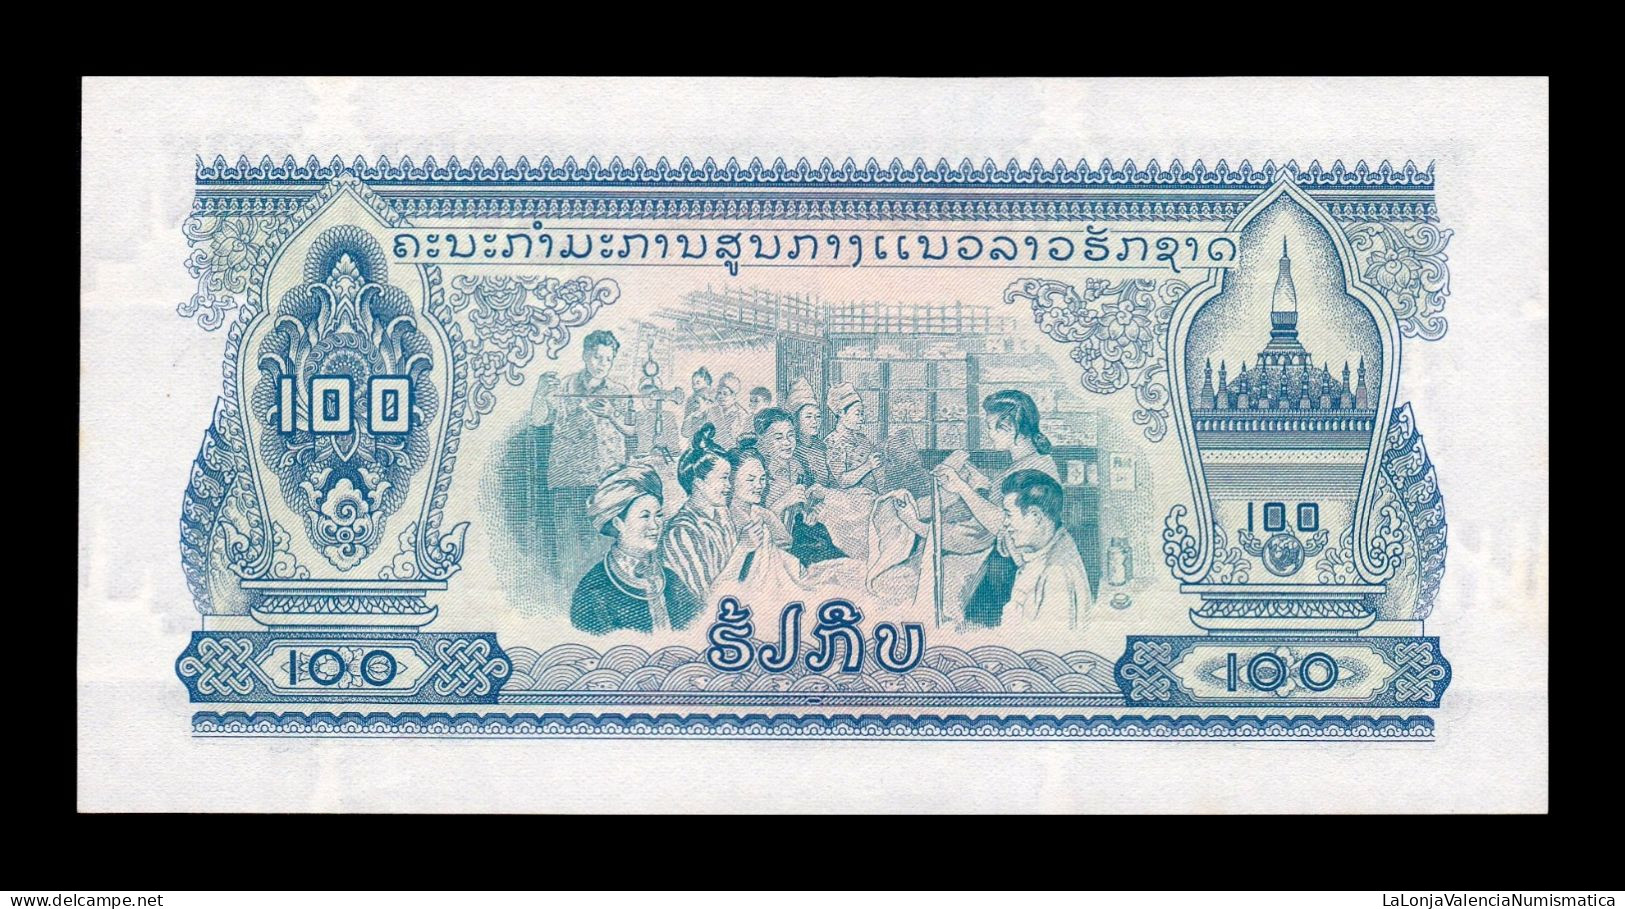 Laos 100 Kip ND (1968) Pick 23 Sc Unc - Laos